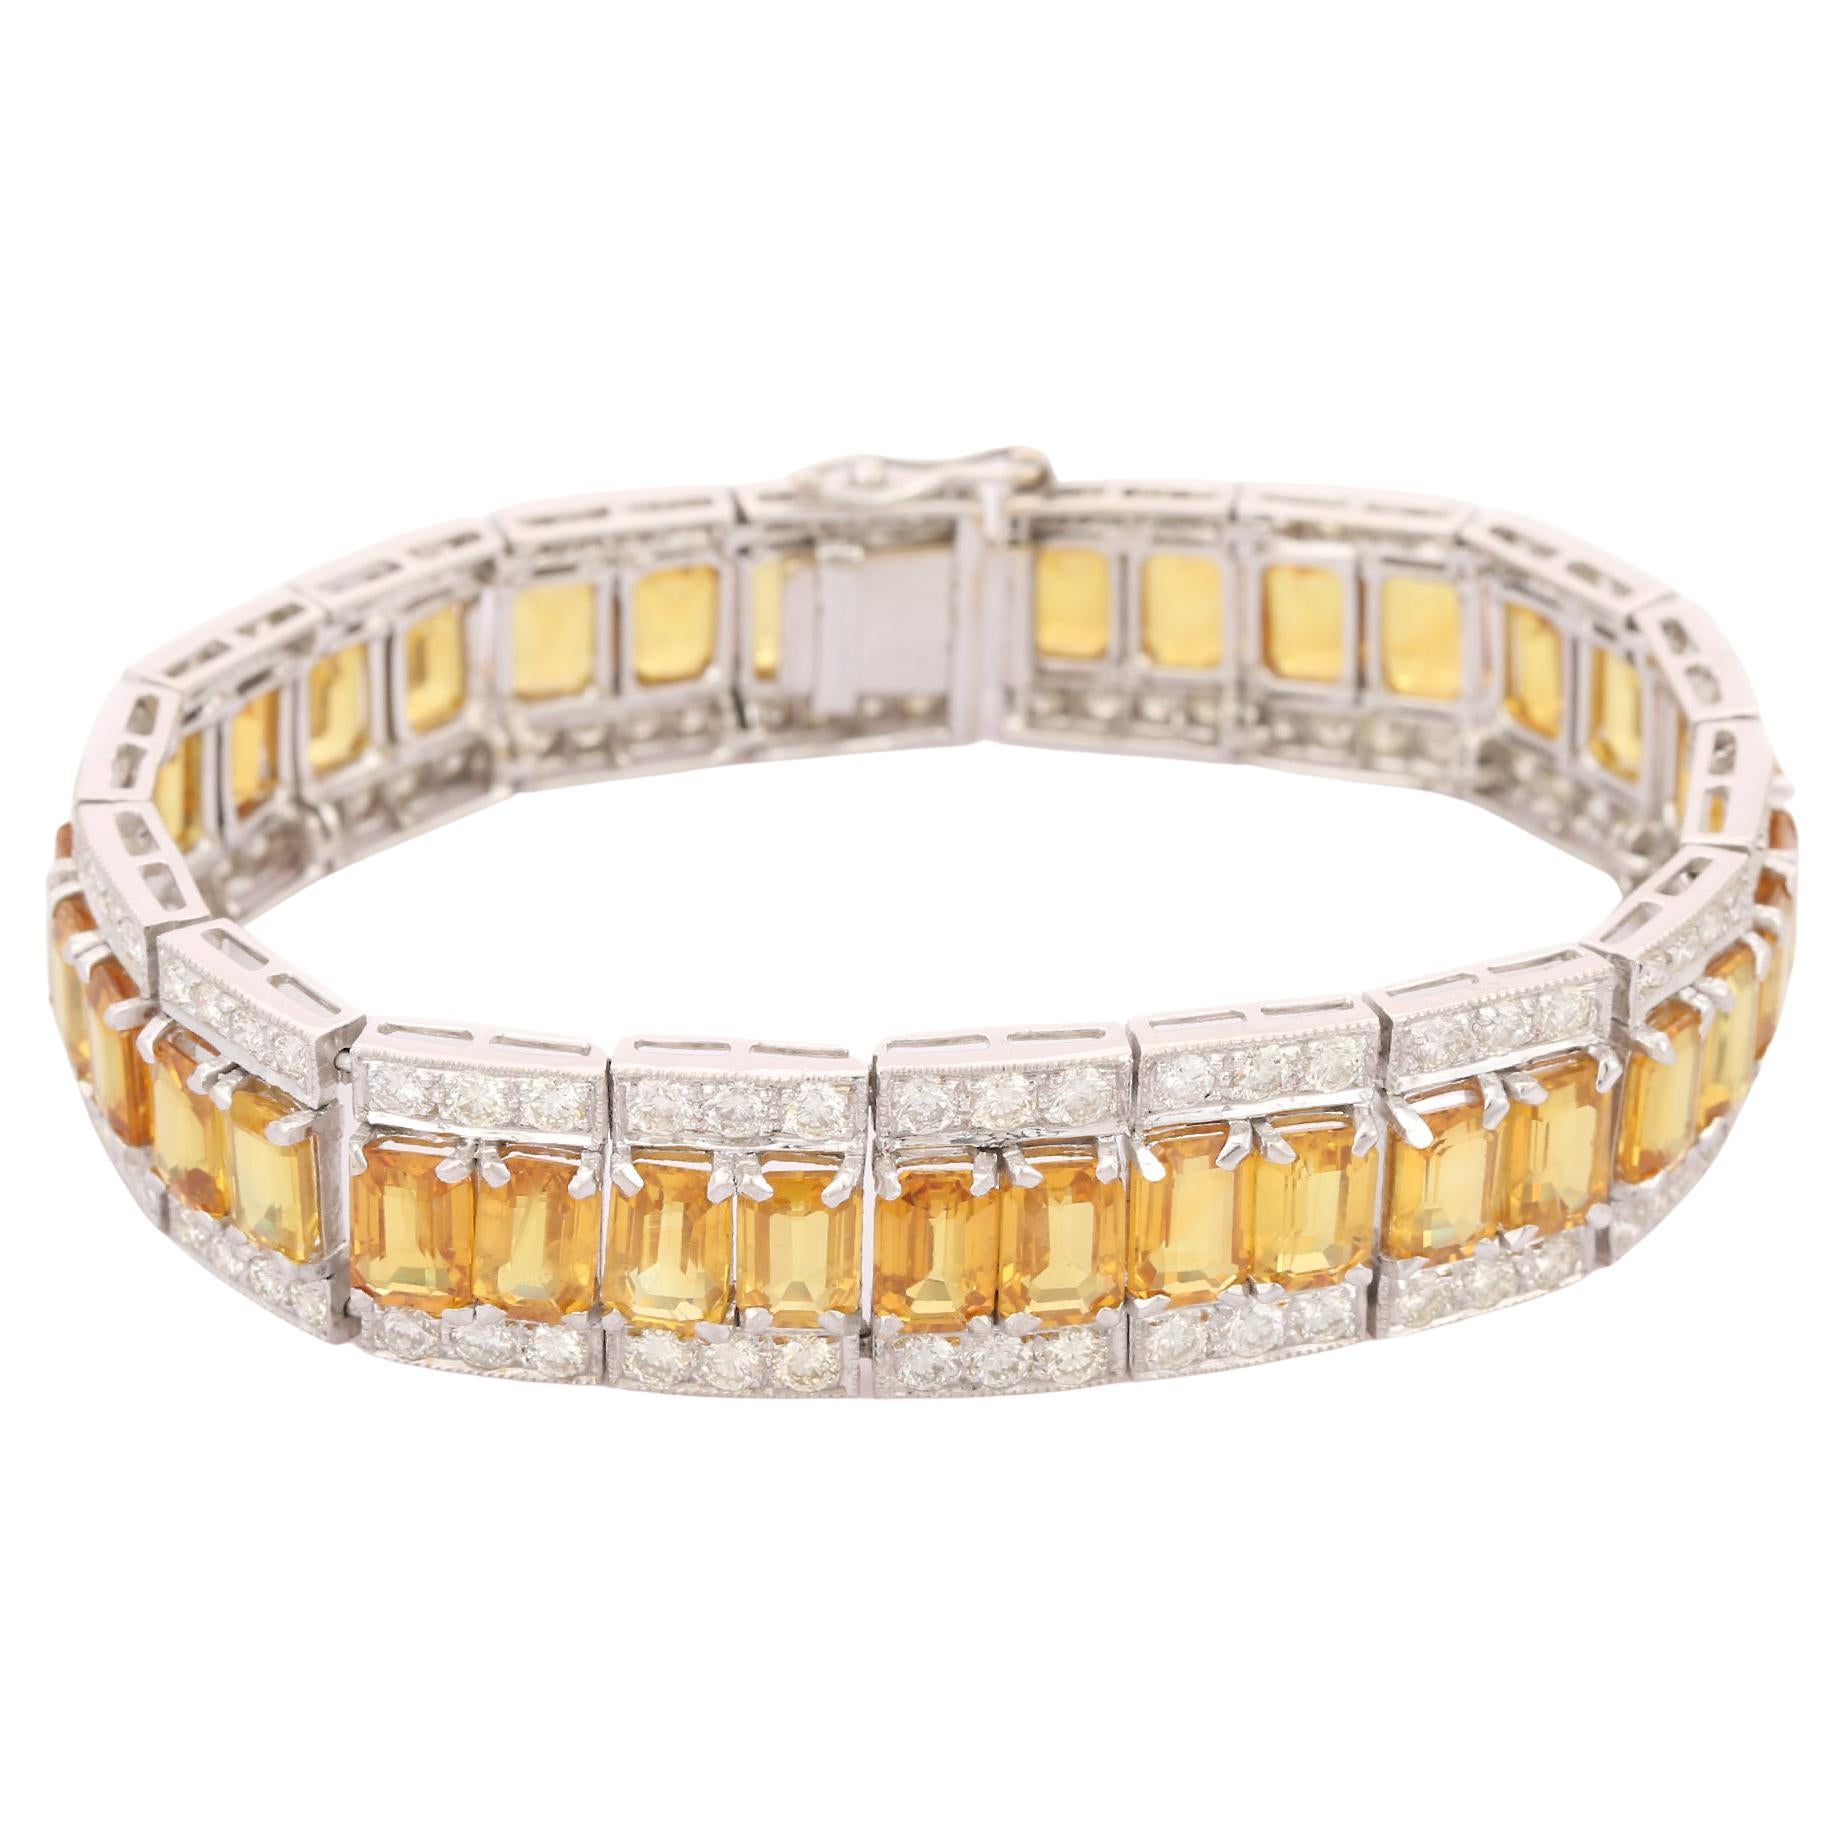 Dieses gelbe Saphir-Diamant-Tennisarmband aus 18 Karat Gold präsentiert 36 unendlich funkelnde natürliche gelbe Saphire mit einem Gewicht von 37,87 Karat und 144 Diamanten mit einem Gewicht von 5,34 Karat. Es misst 7 Zoll in der Länge. 
Der Saphir